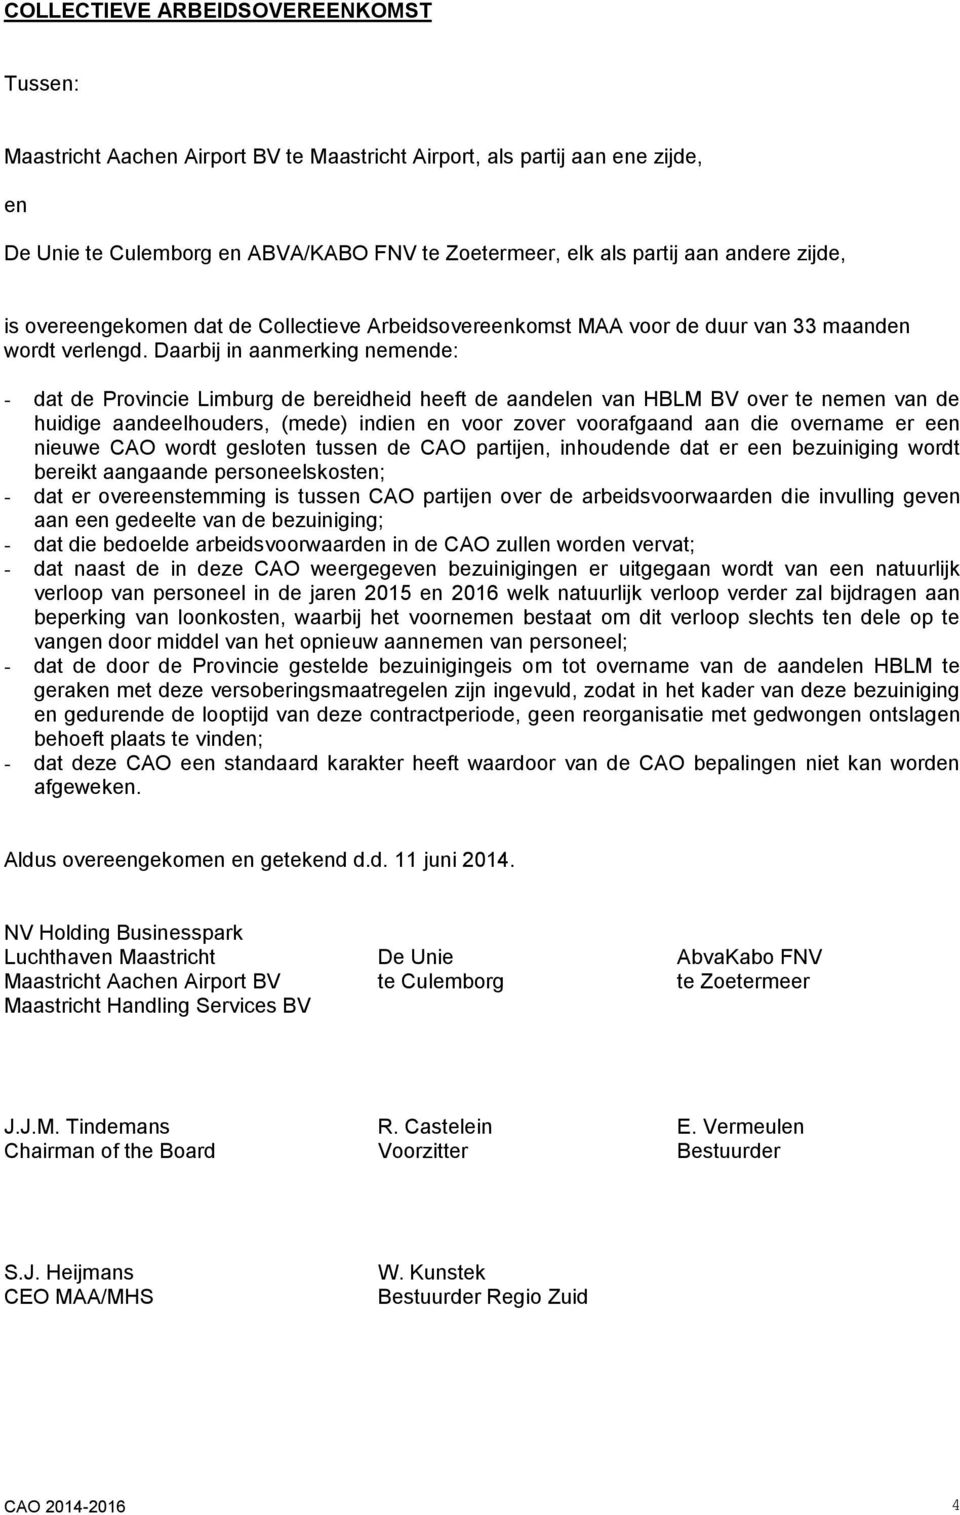 Daarbij in aanmerking nemende: - dat de Provincie Limburg de bereidheid heeft de aandelen van HBLM BV over te nemen van de huidige aandeelhouders, (mede) indien en voor zover voorafgaand aan die